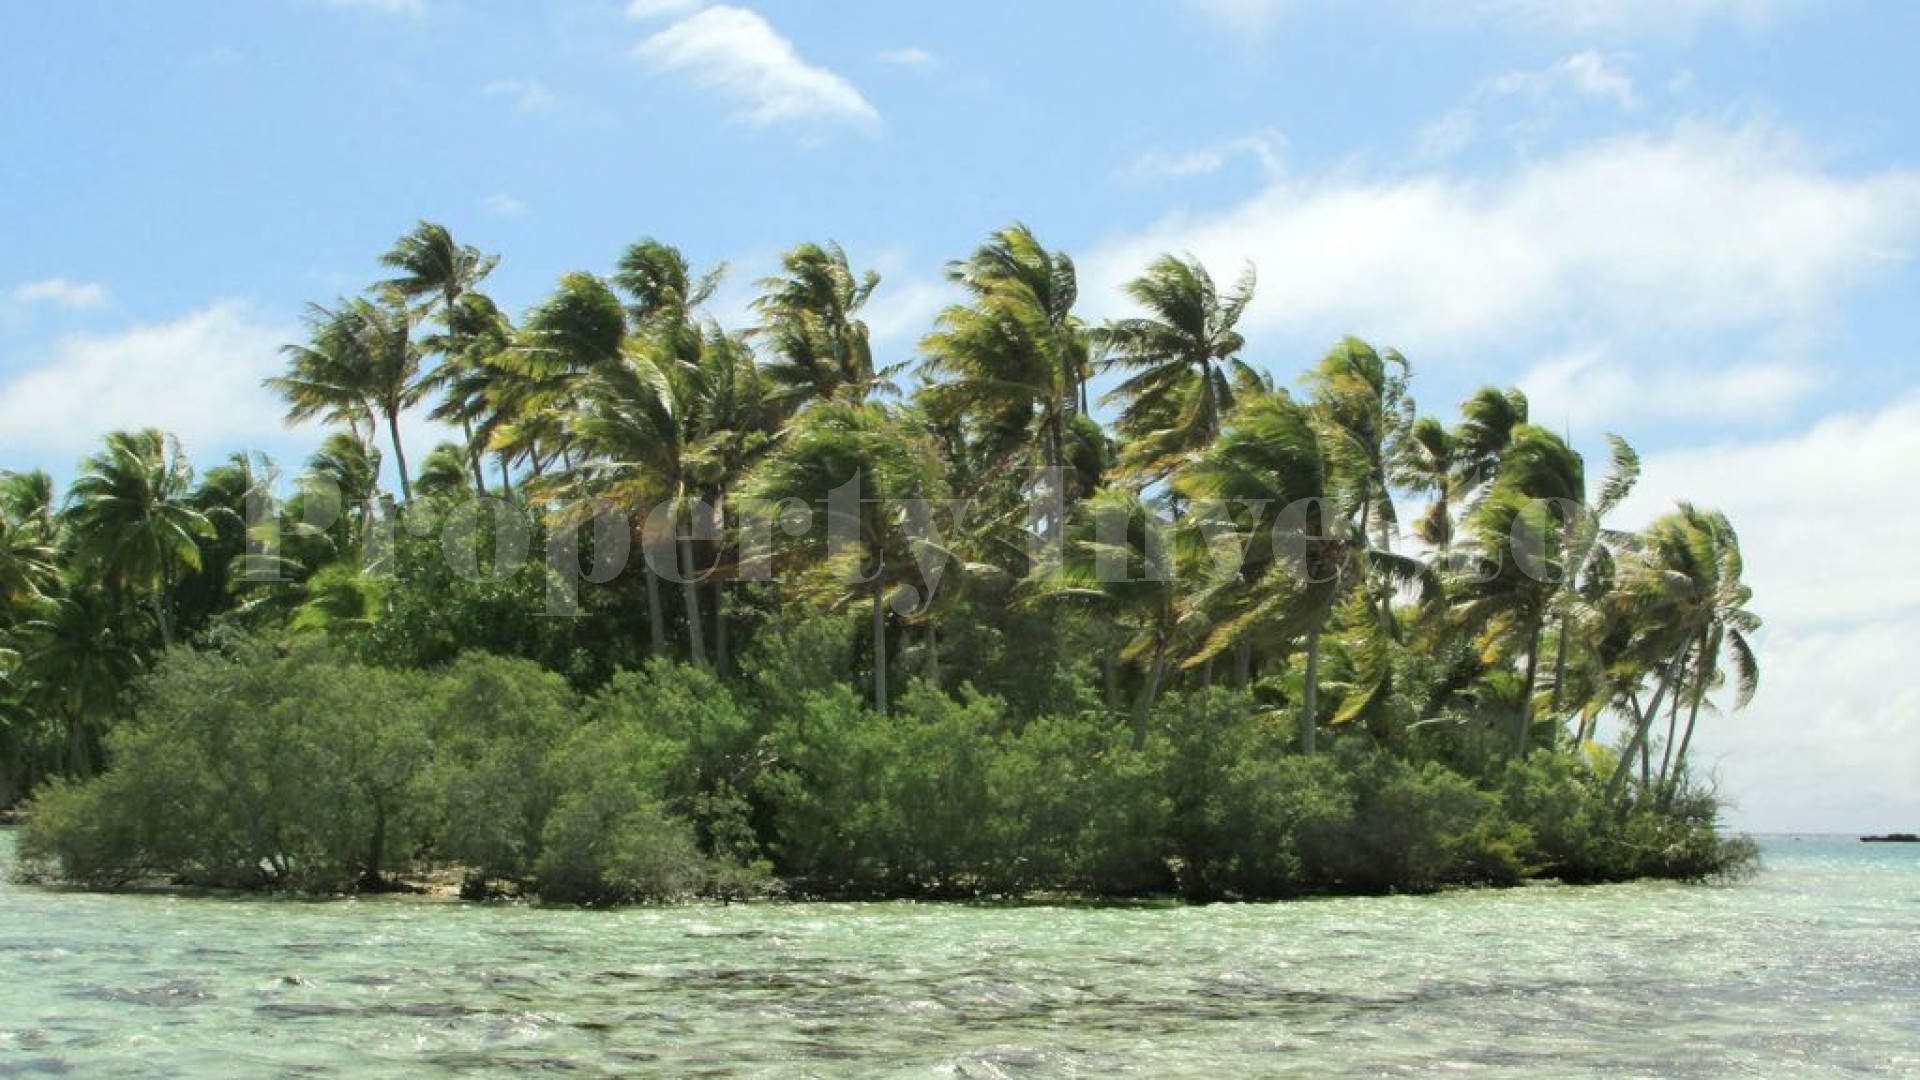 Продаётся восхитительный дикий частный остров 7,12 га во Французской Полинезии